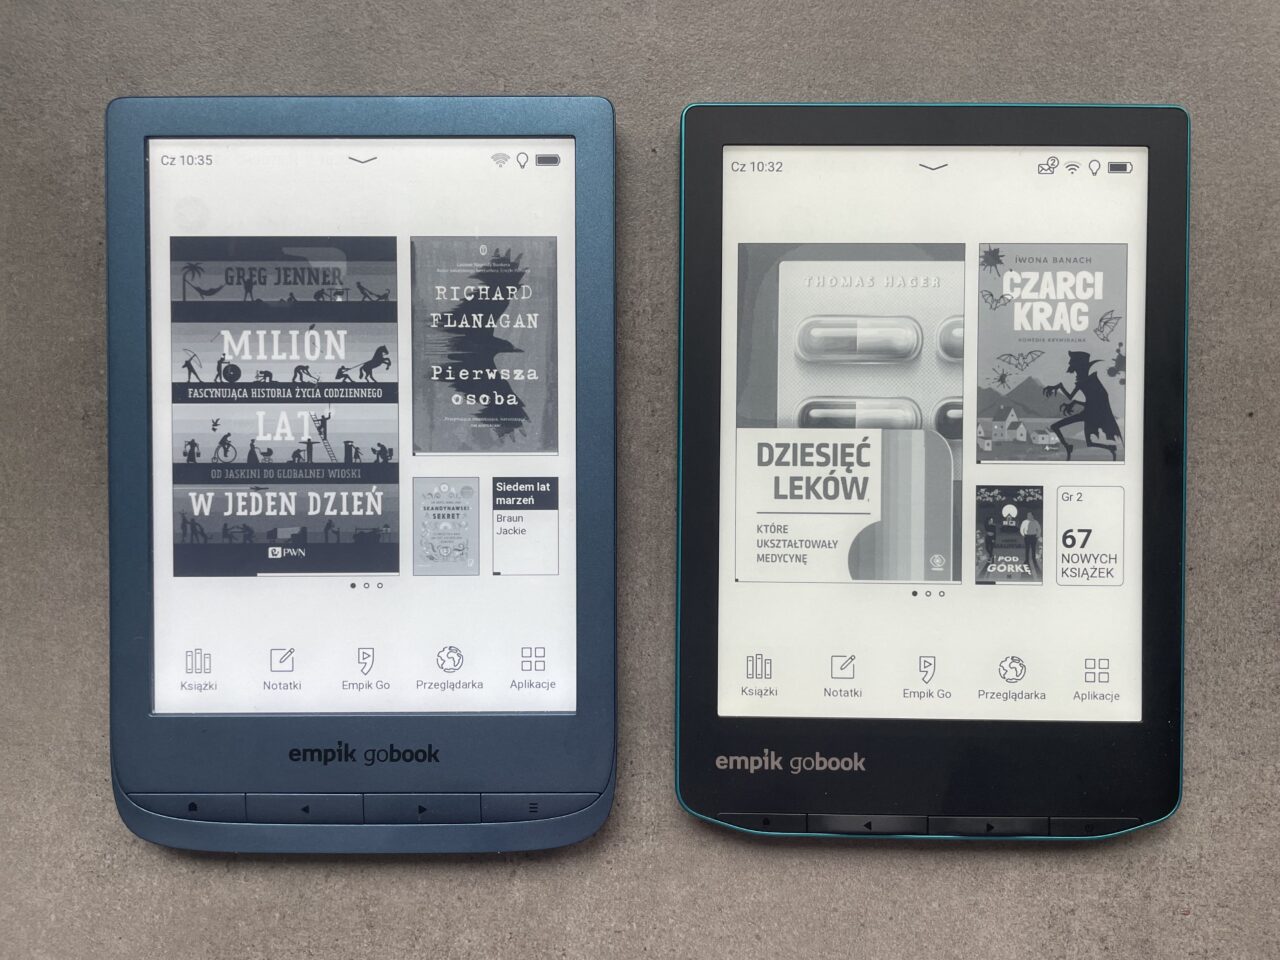 Dwa czytniki e-booków marki Empik GoBook na szarym tle. Lewy czytnik z niebieską obudową wyświetla ekran główny z okładkami książek, w tym "Million lat w jeden dzień" i "Pierwsza osoba". Prawy czytnik z zielonkawą obudową pokazuje ekran z okładką książki "Dziesięć leków, które ukształtowały medycynę" i promocją "67 nowych książek". Na obu ekranach widoczne są godziny i ikony aplikacji.